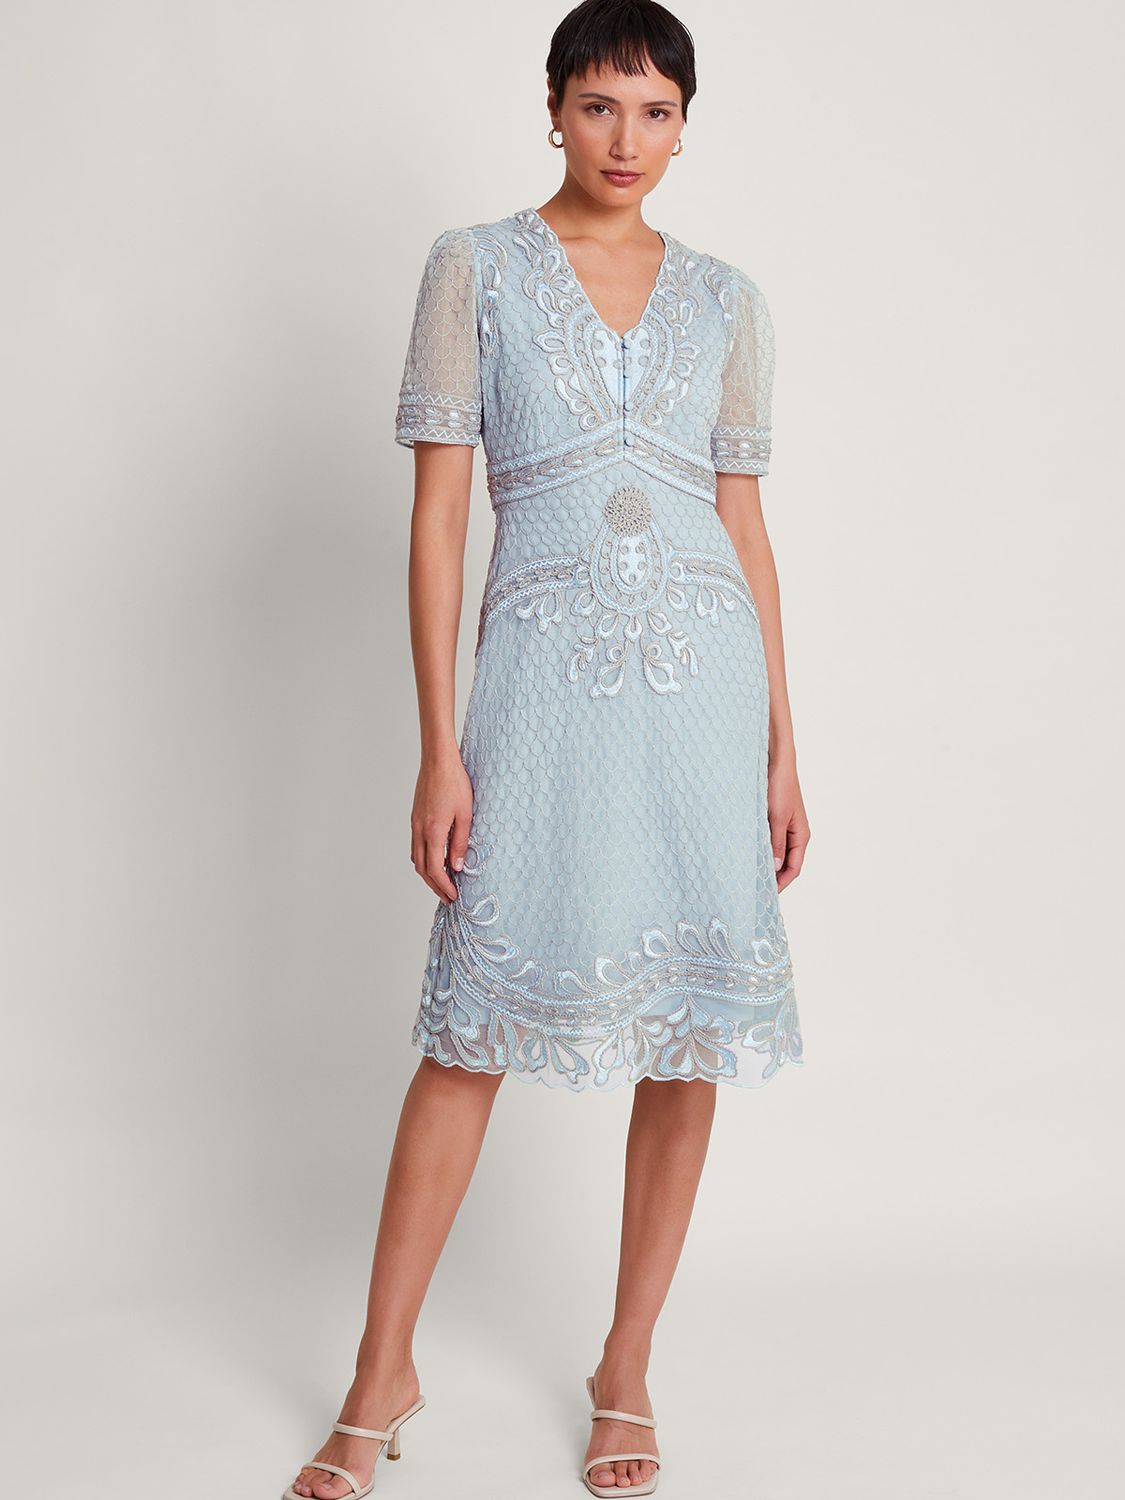 Monsoon Siena Embroidered Tea Dress, Blue, 8